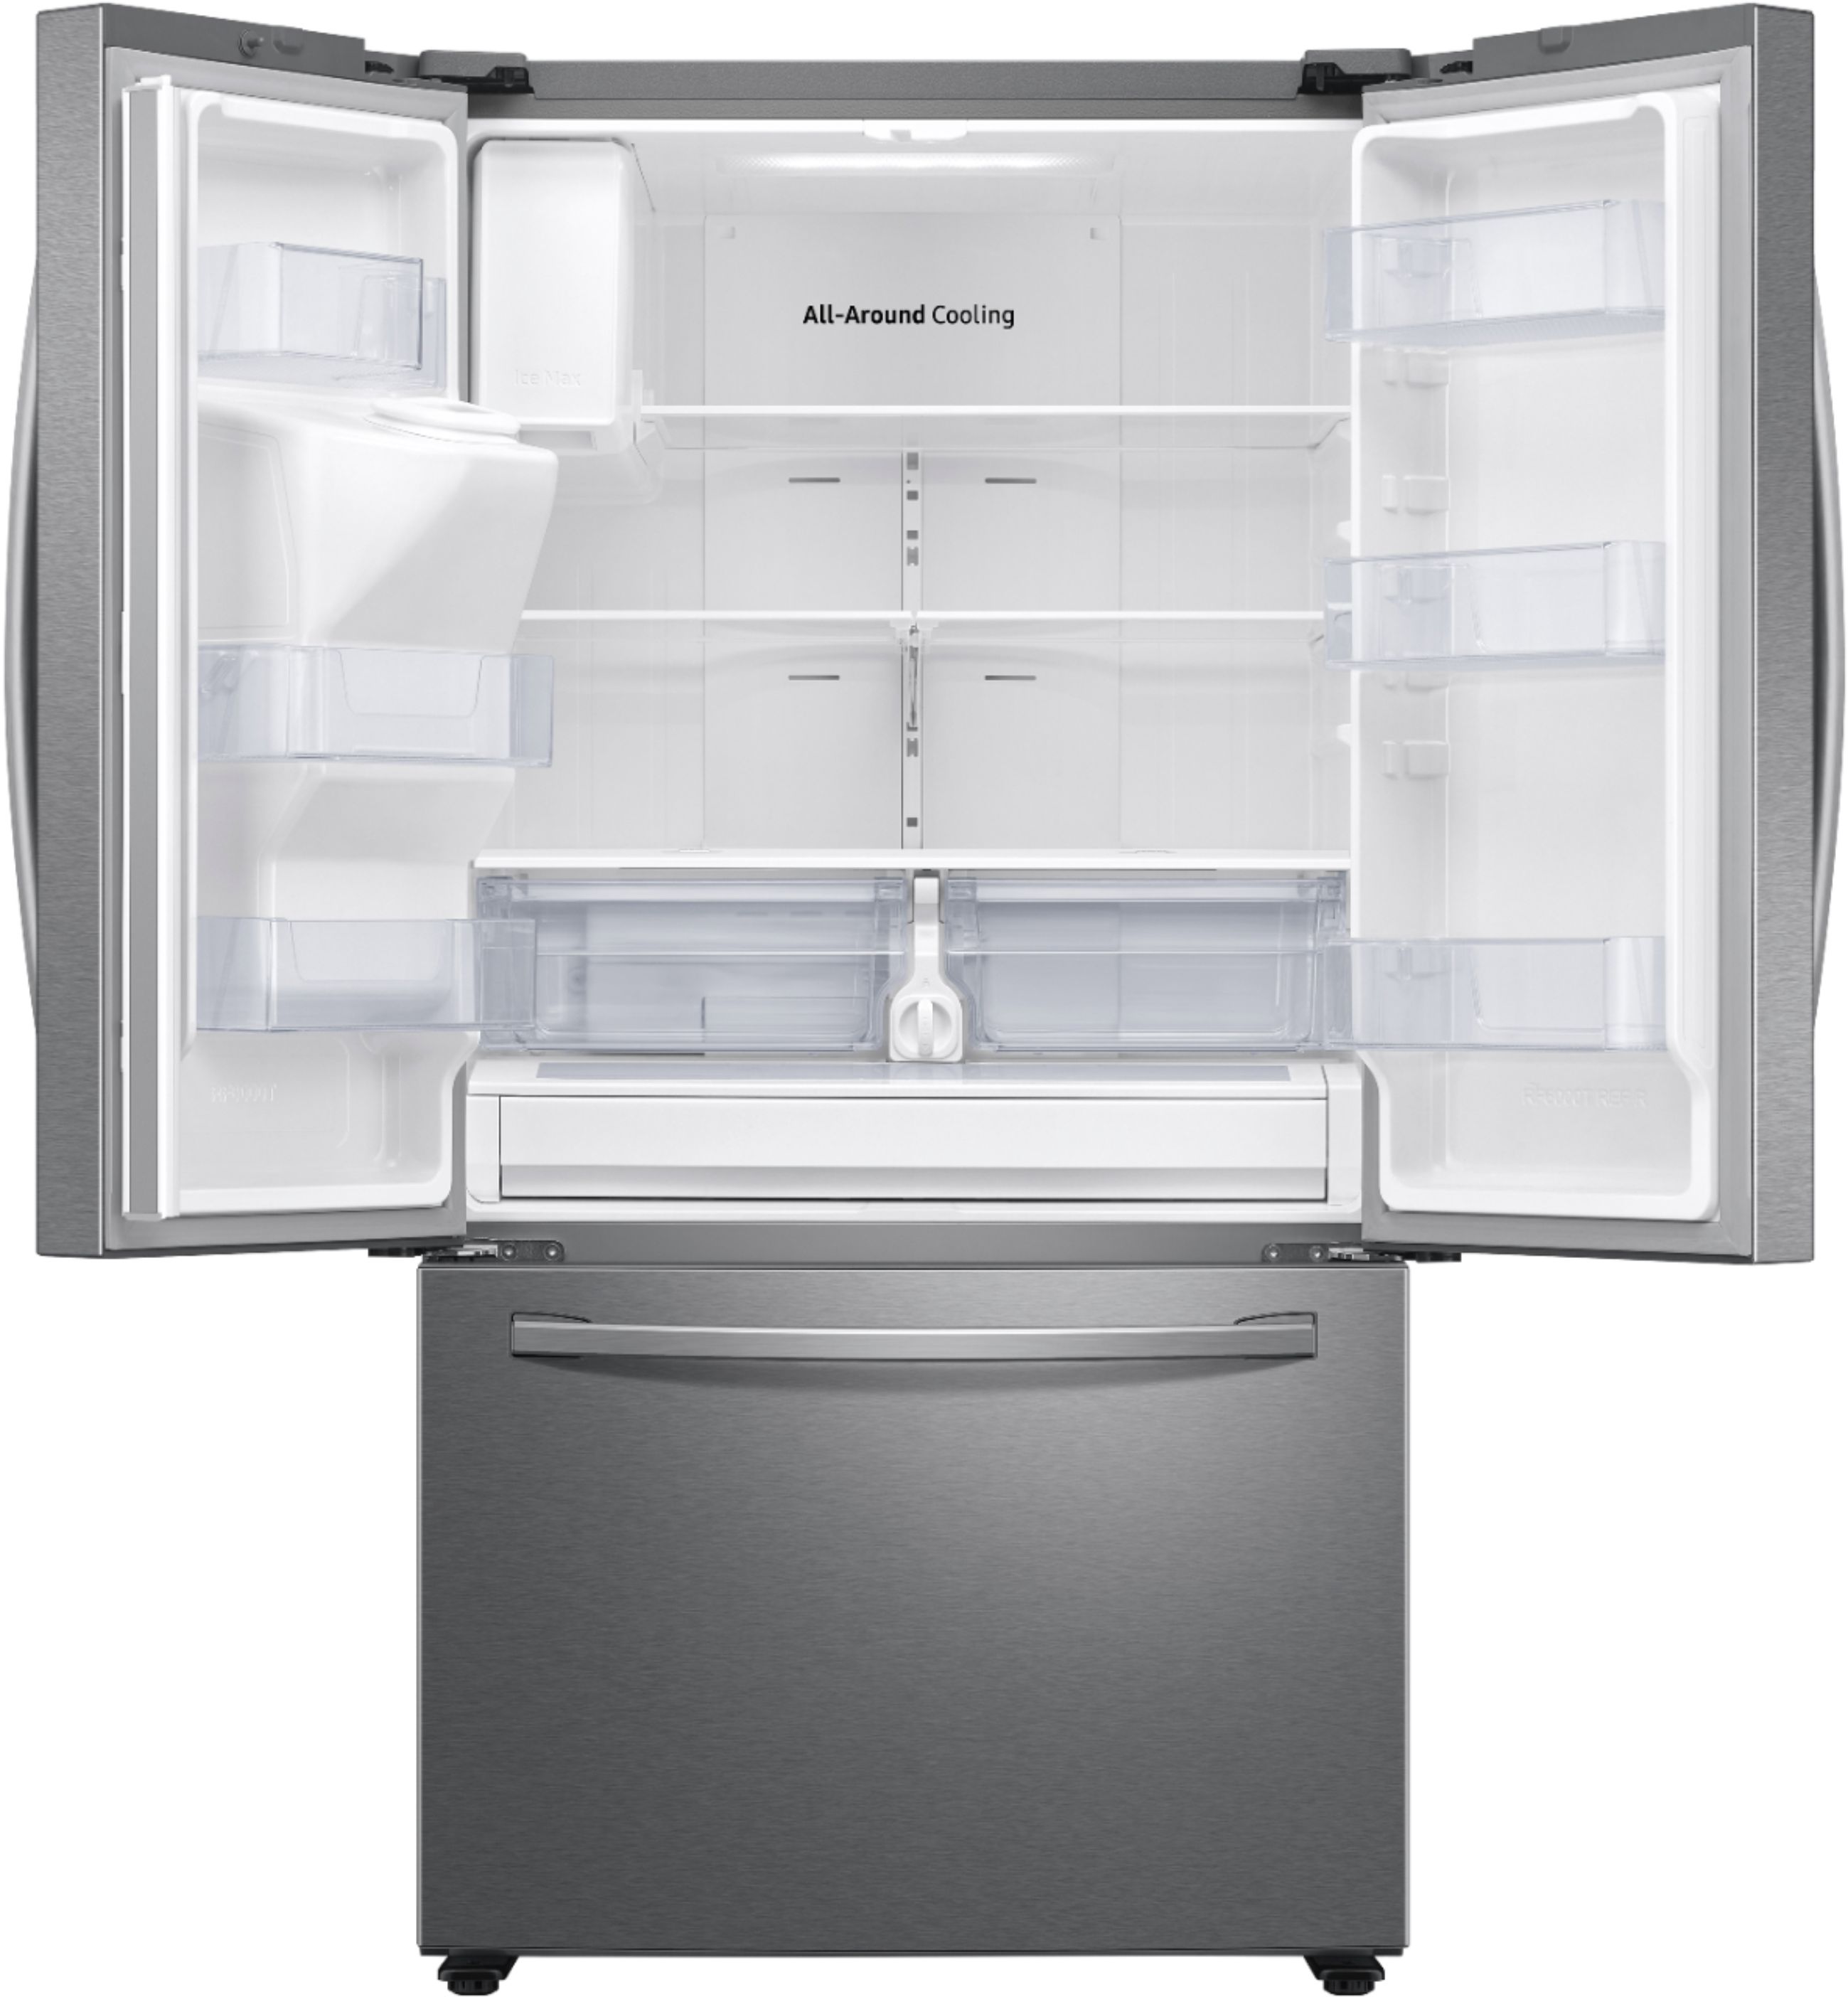 Left View: Samsung - 27 cu. ft. 3-Door French Door Refrigerator with External Water & Ice Dispenser - Stainless Steel